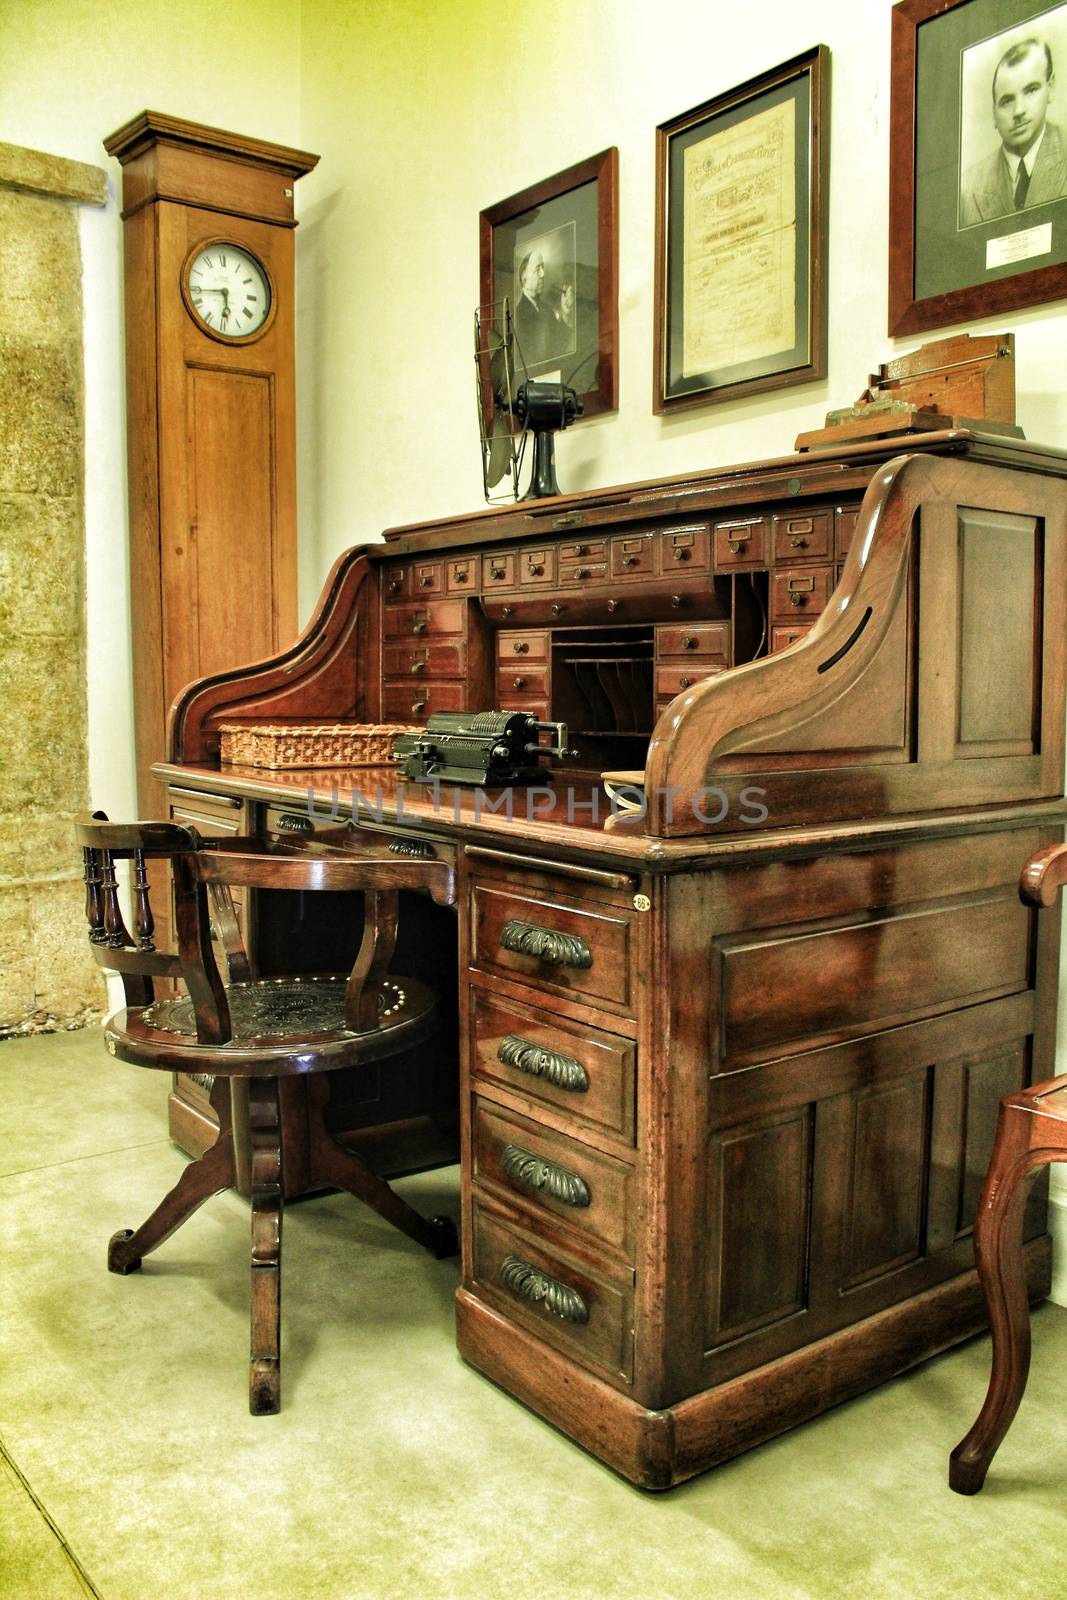 Old and elegant wooden desk